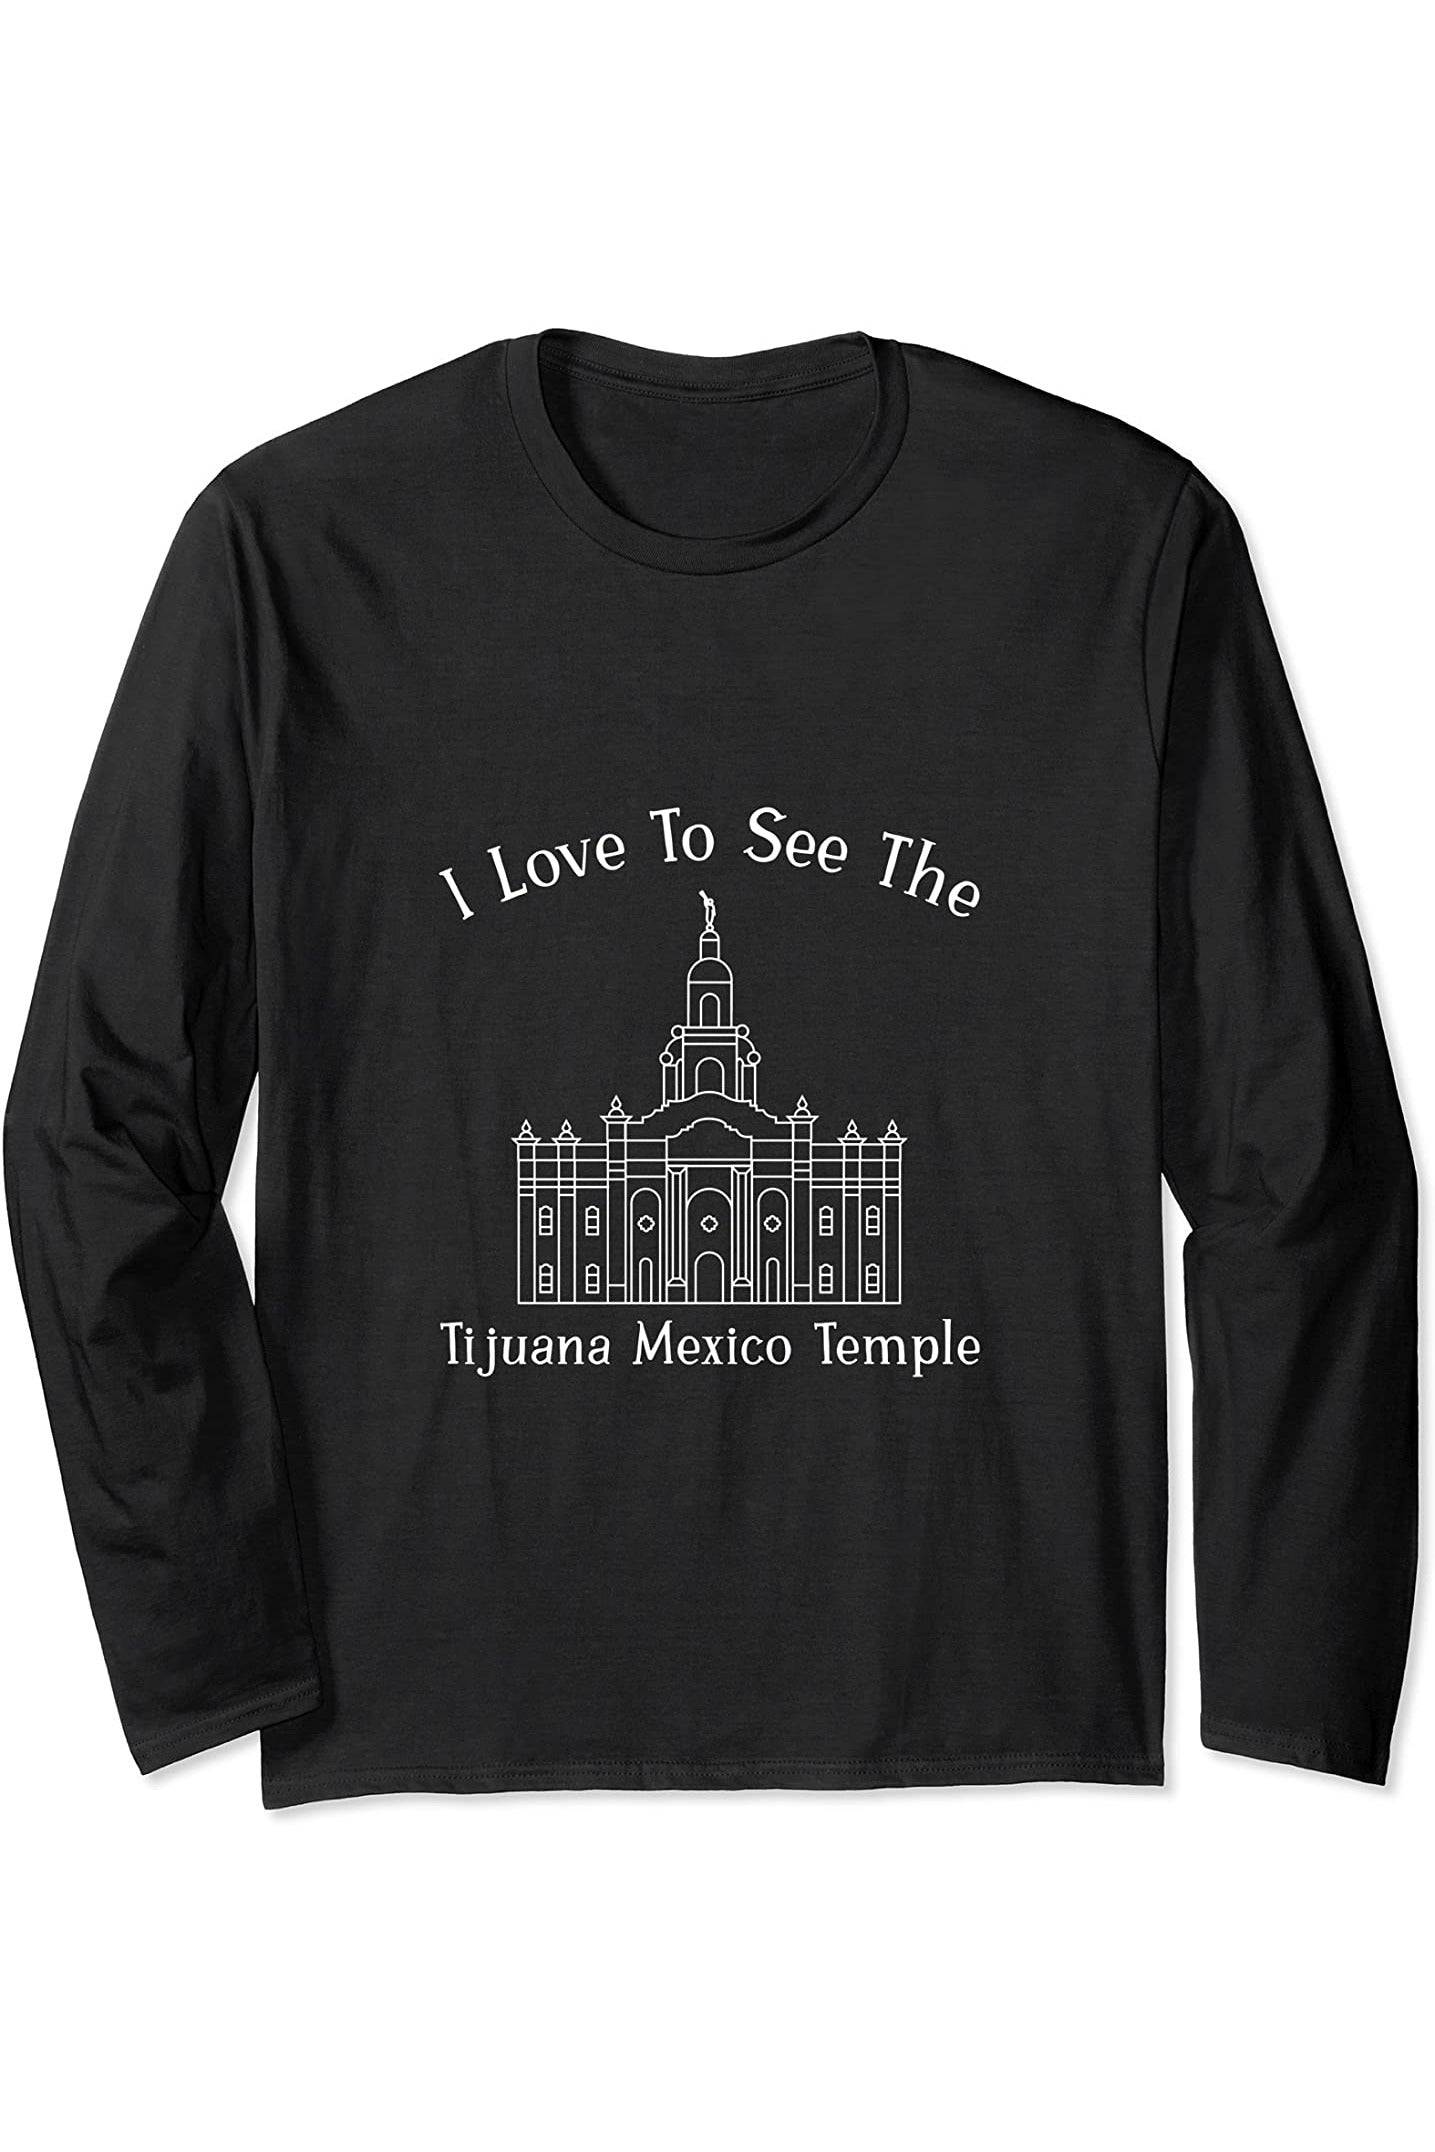 Tijuana Mexico Temple Long Sleeve T-Shirt - Happy Style (English) US